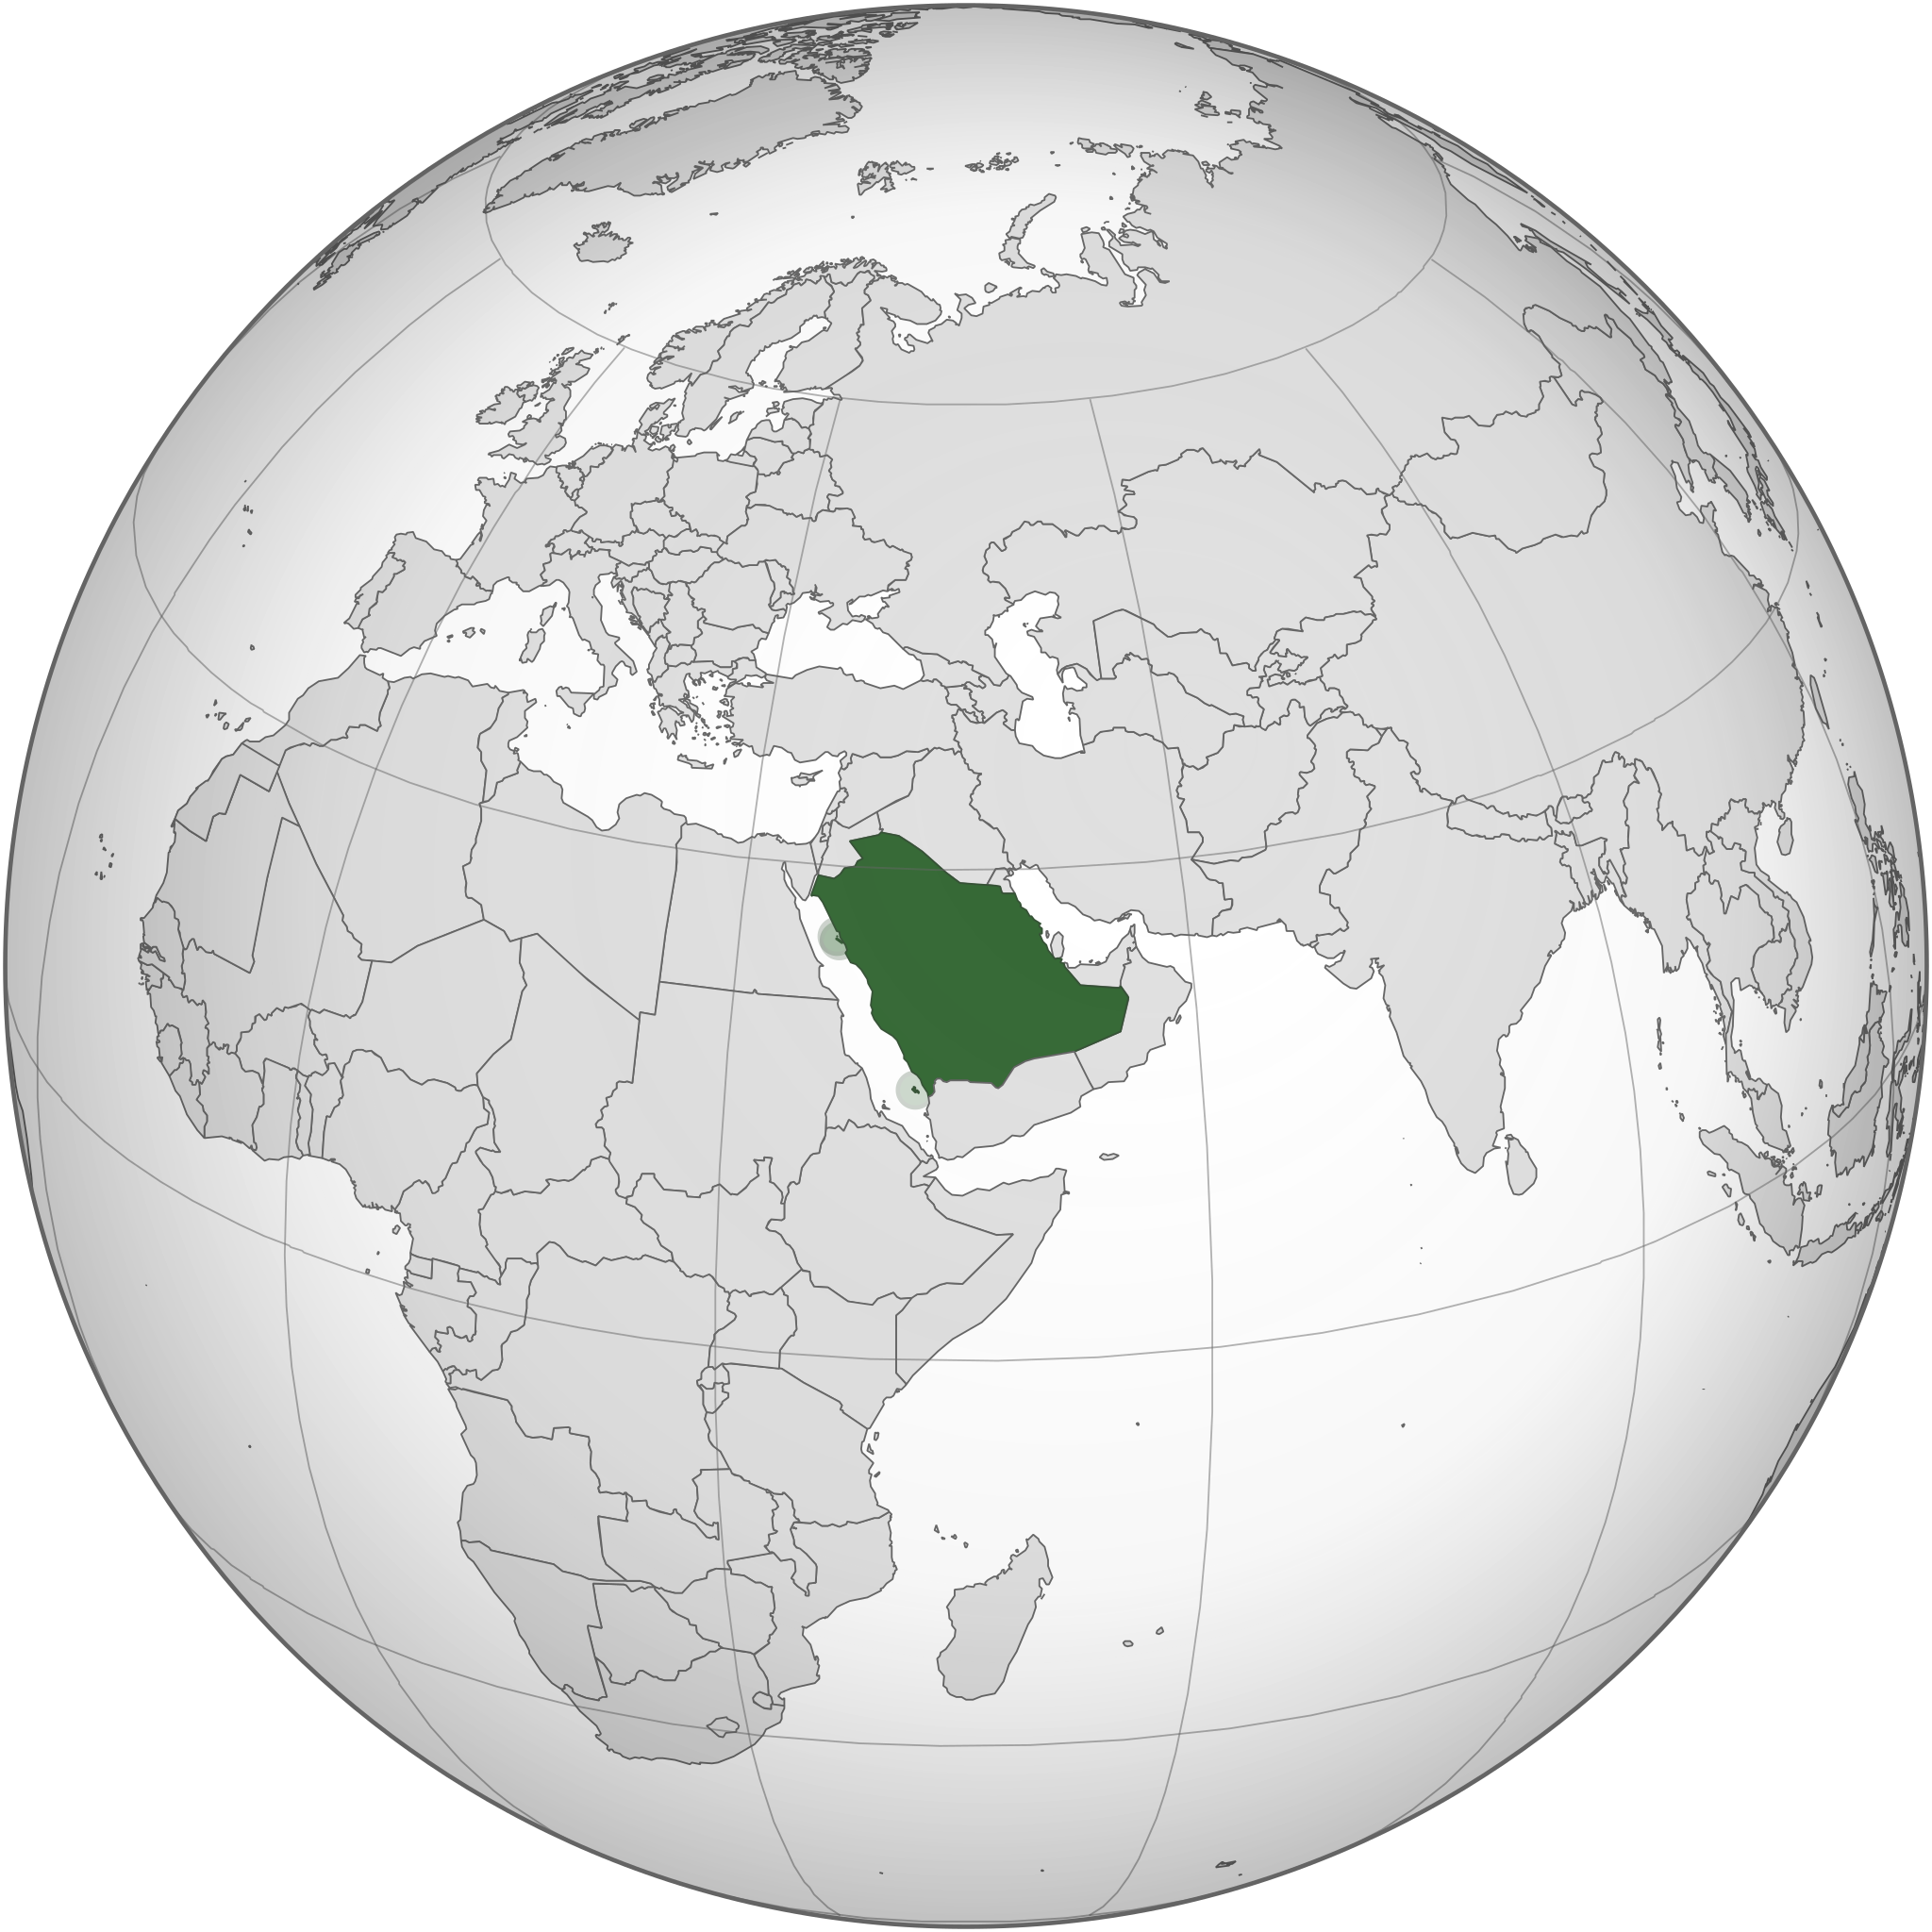 File:Saudi Arabia map.png